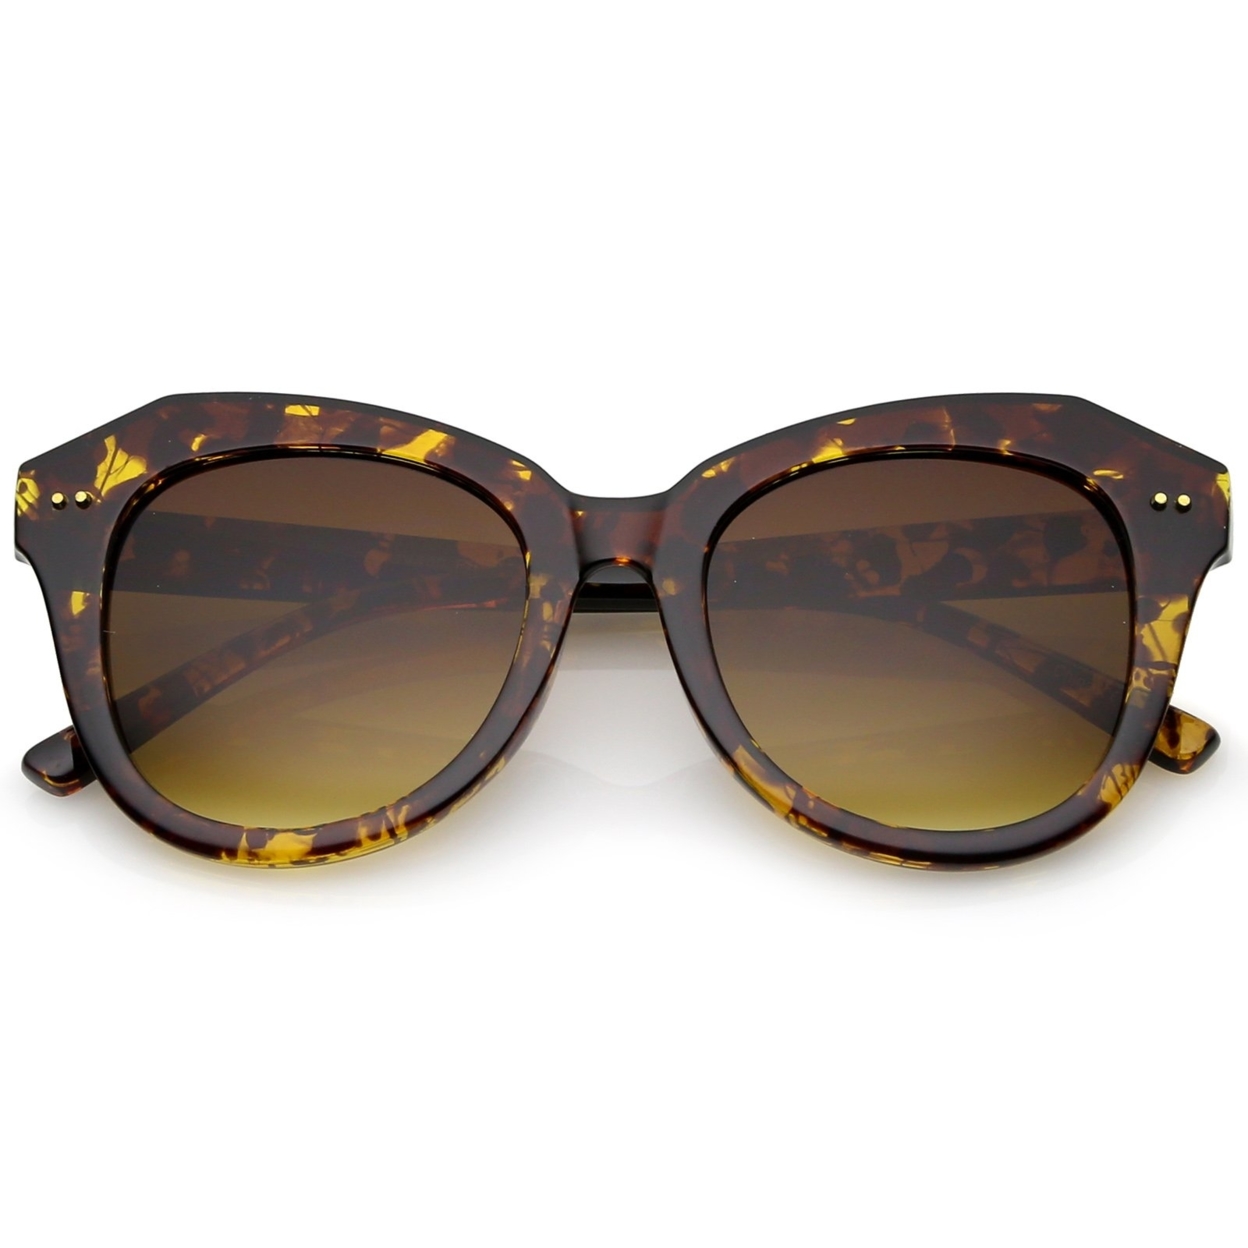 Women's Oversize Horn Rimmed Round Lens Cat Eye Sunglasses 52mm - Tortoise / Amber